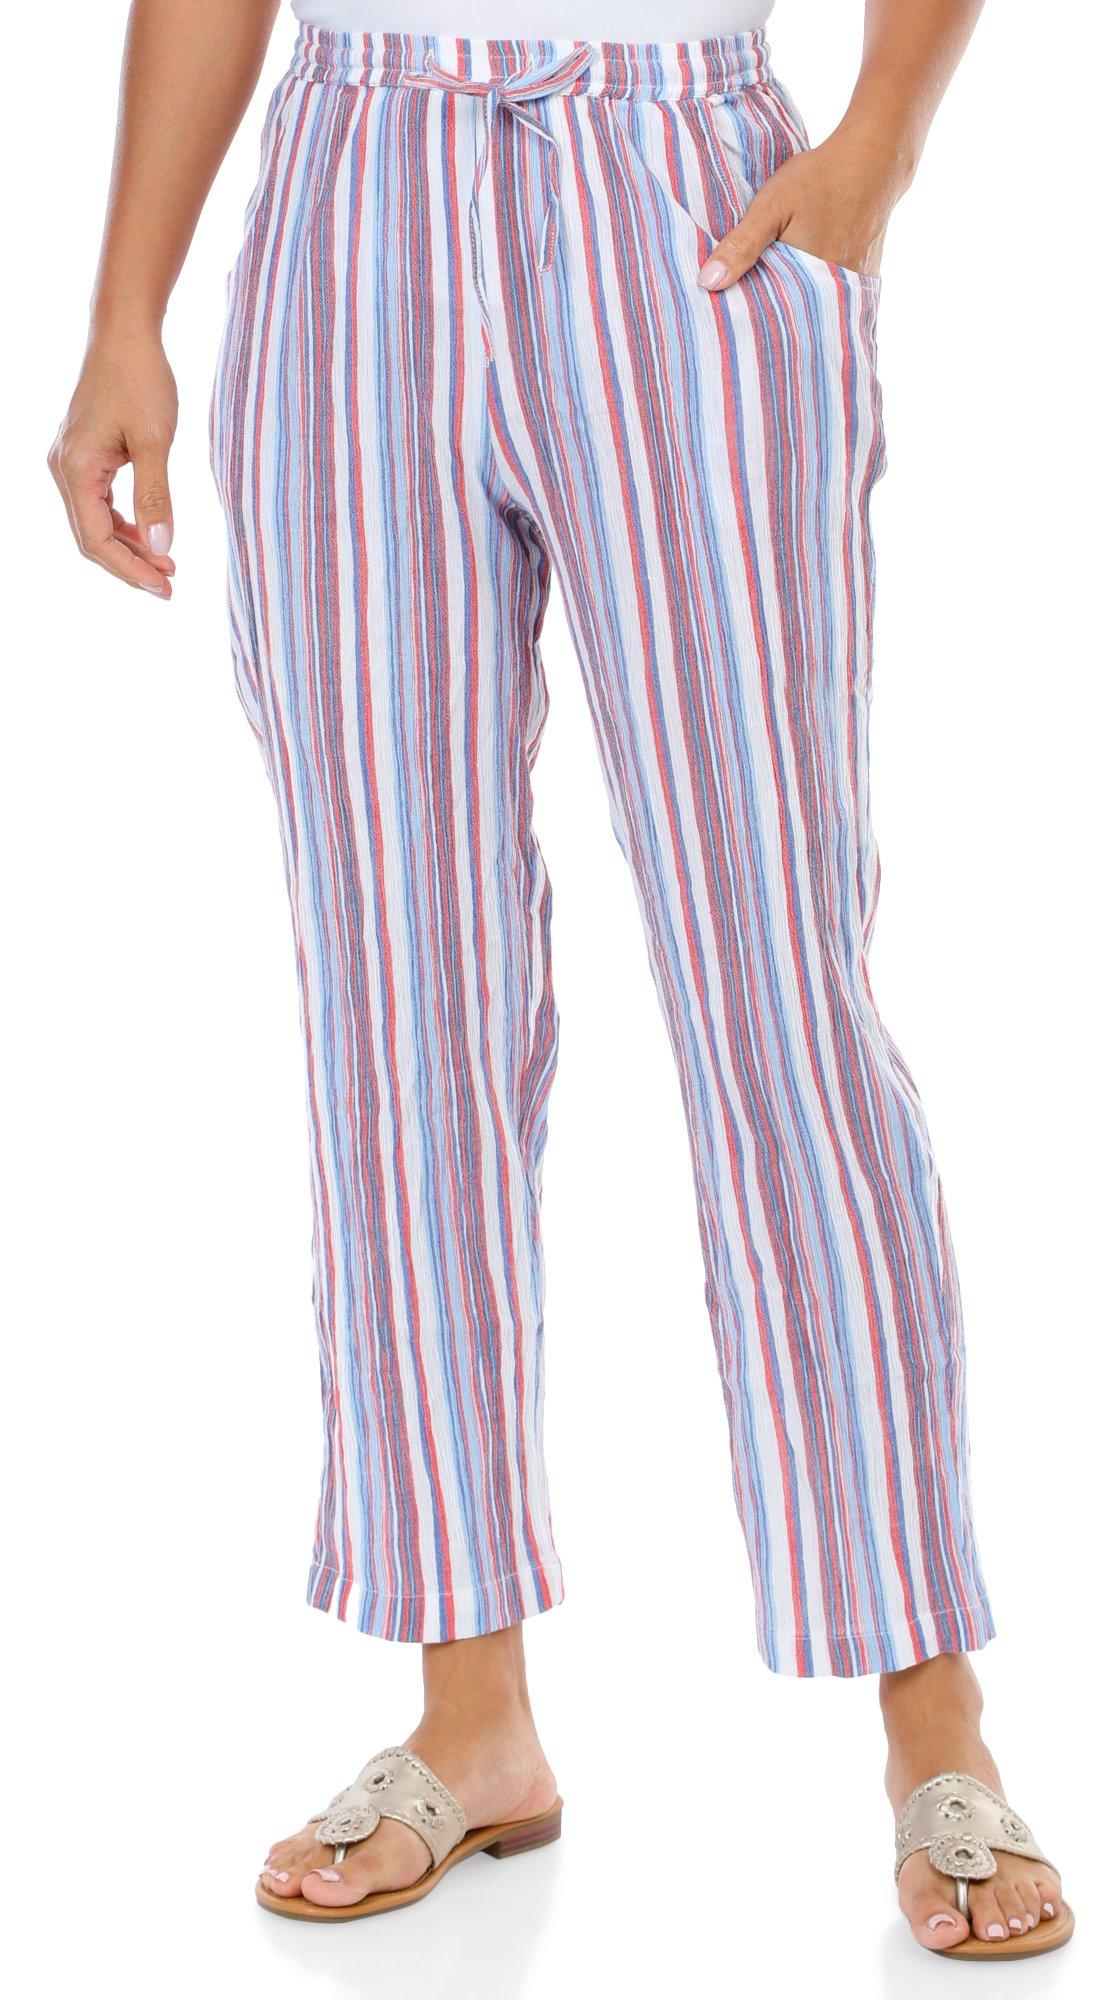 Women's Americana Striped Print Pants